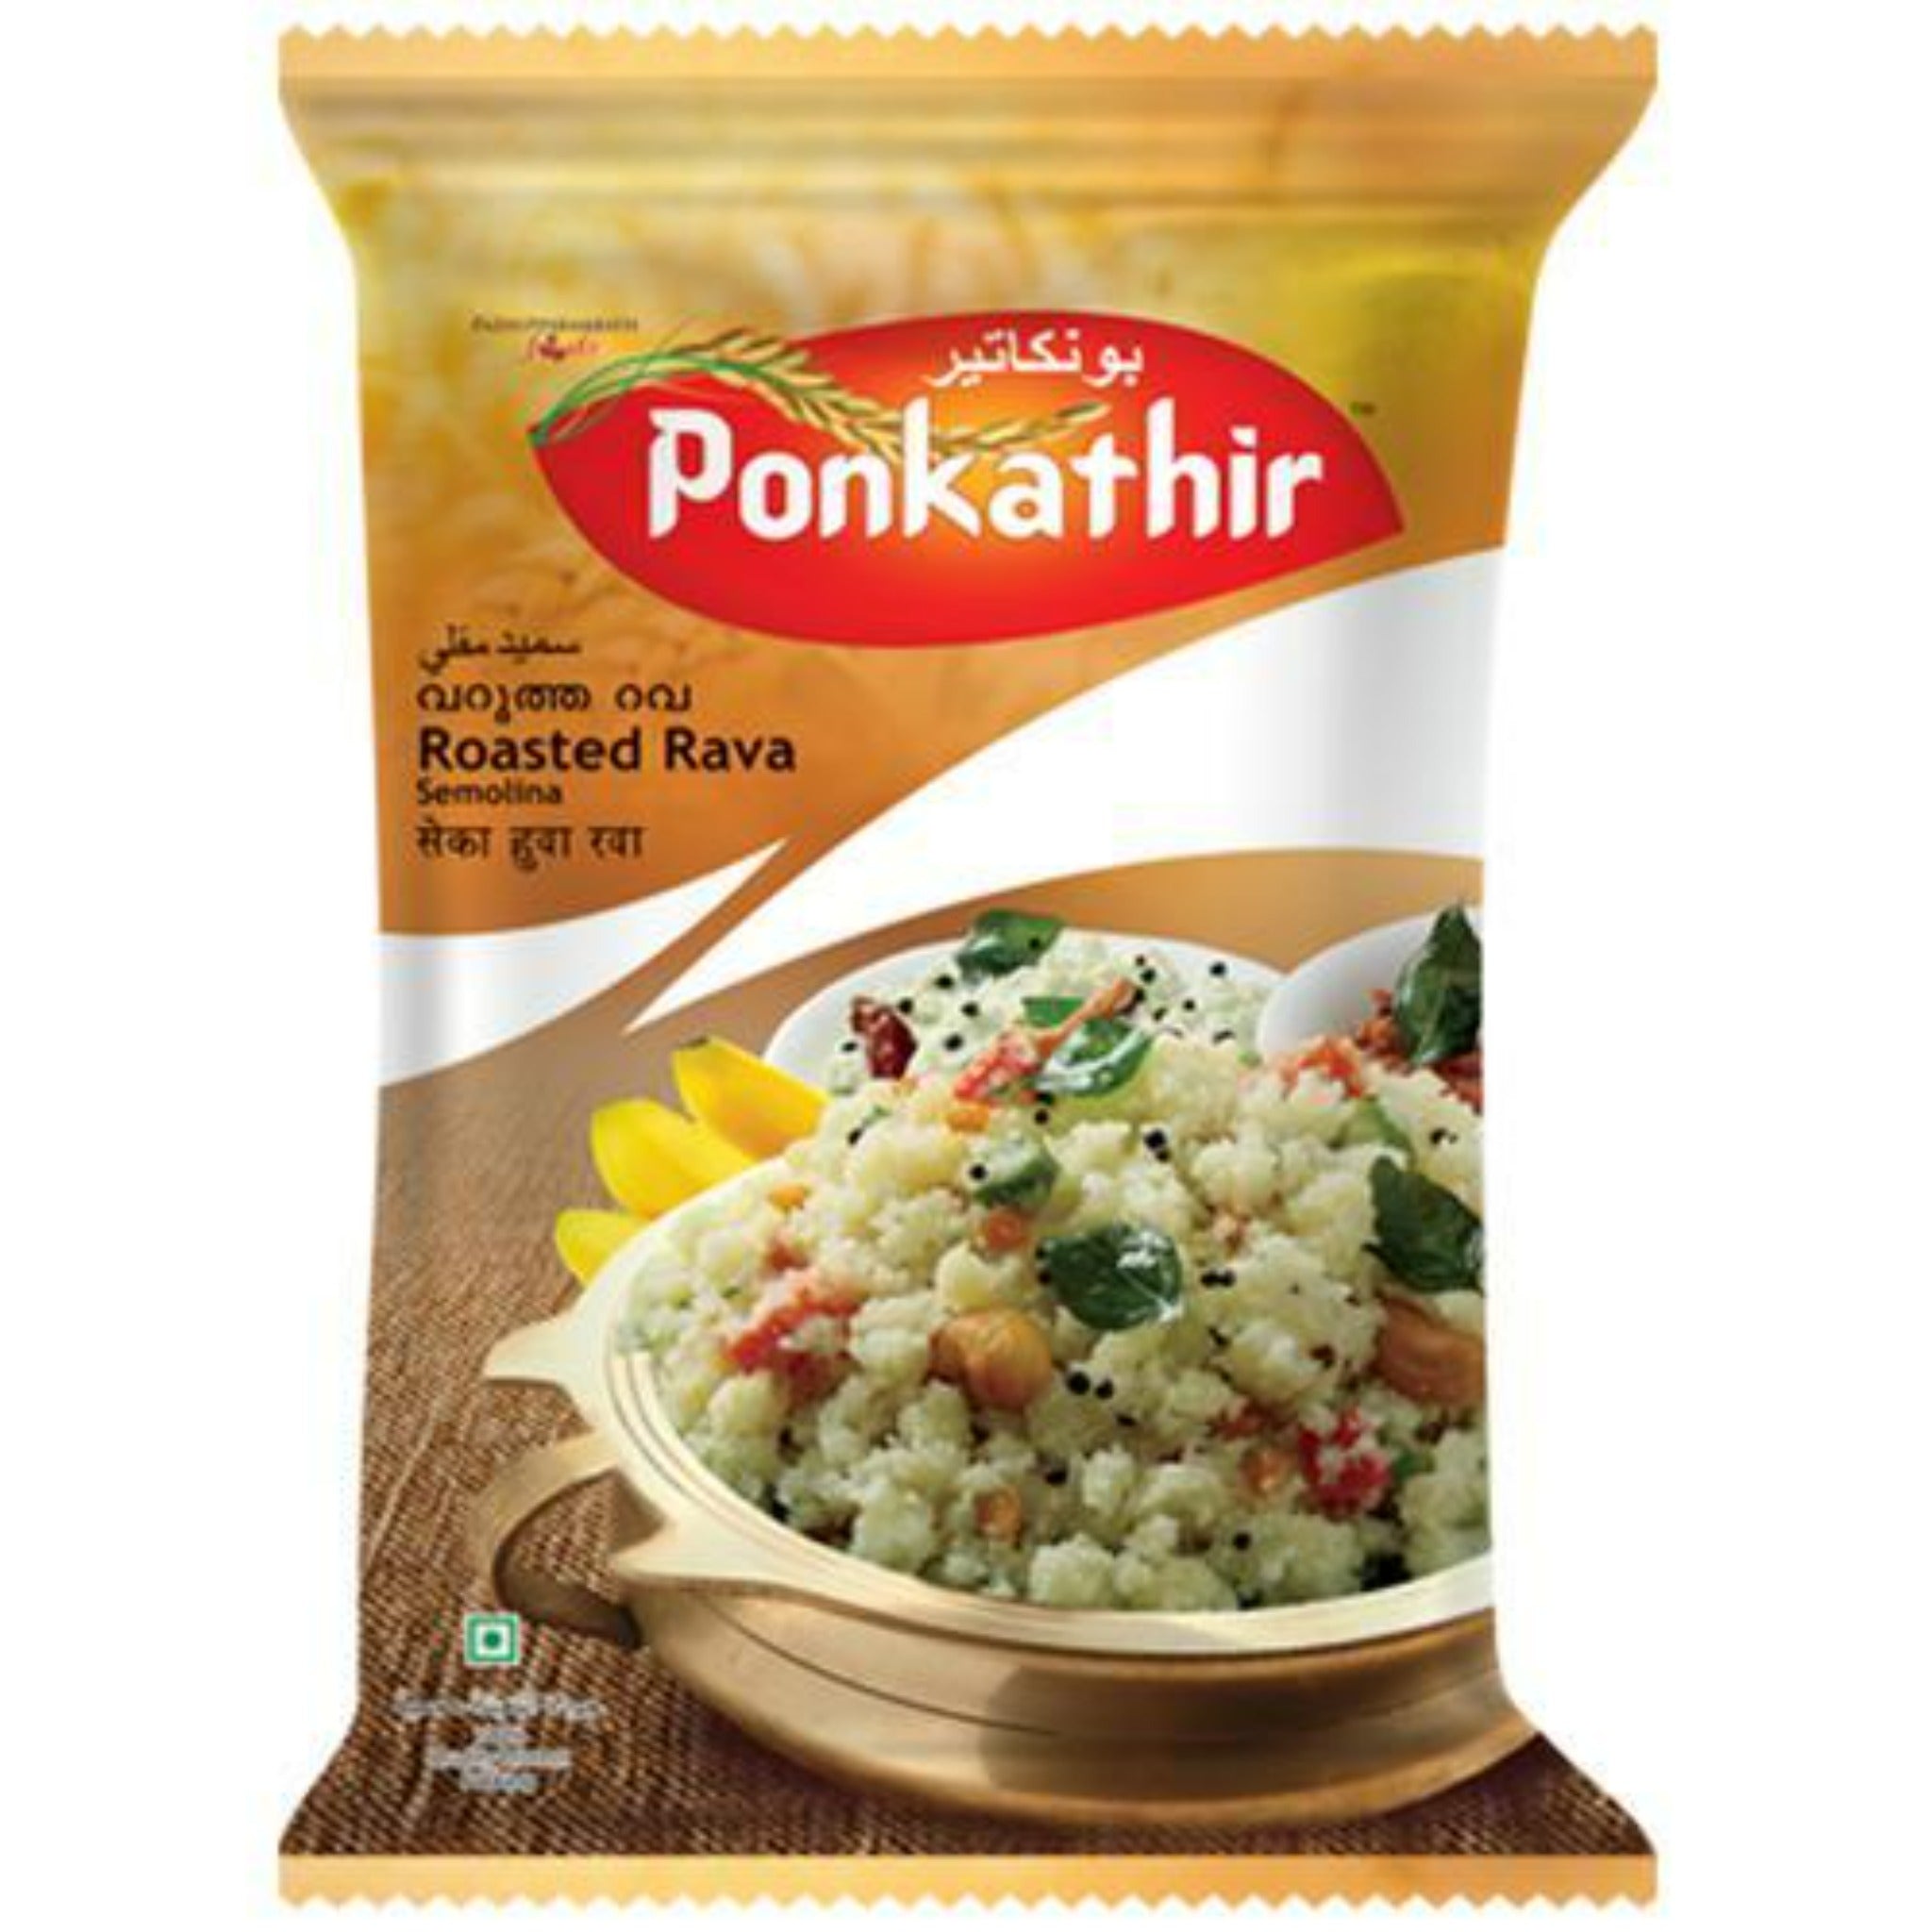 Ponkathir